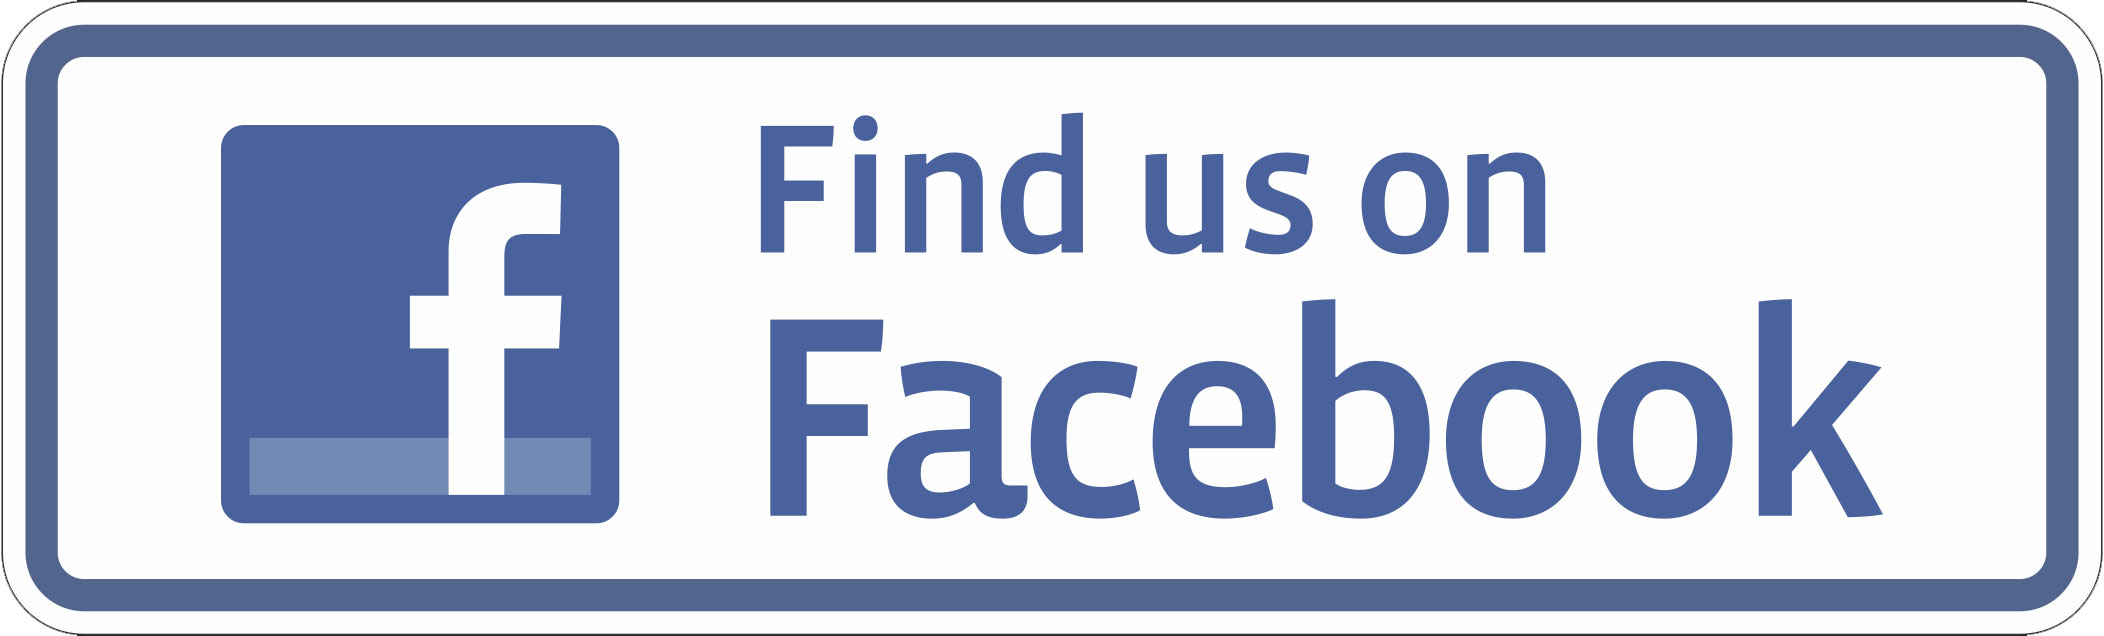 Find-us-on-Facebook-logo.jpg - 91.84 KB